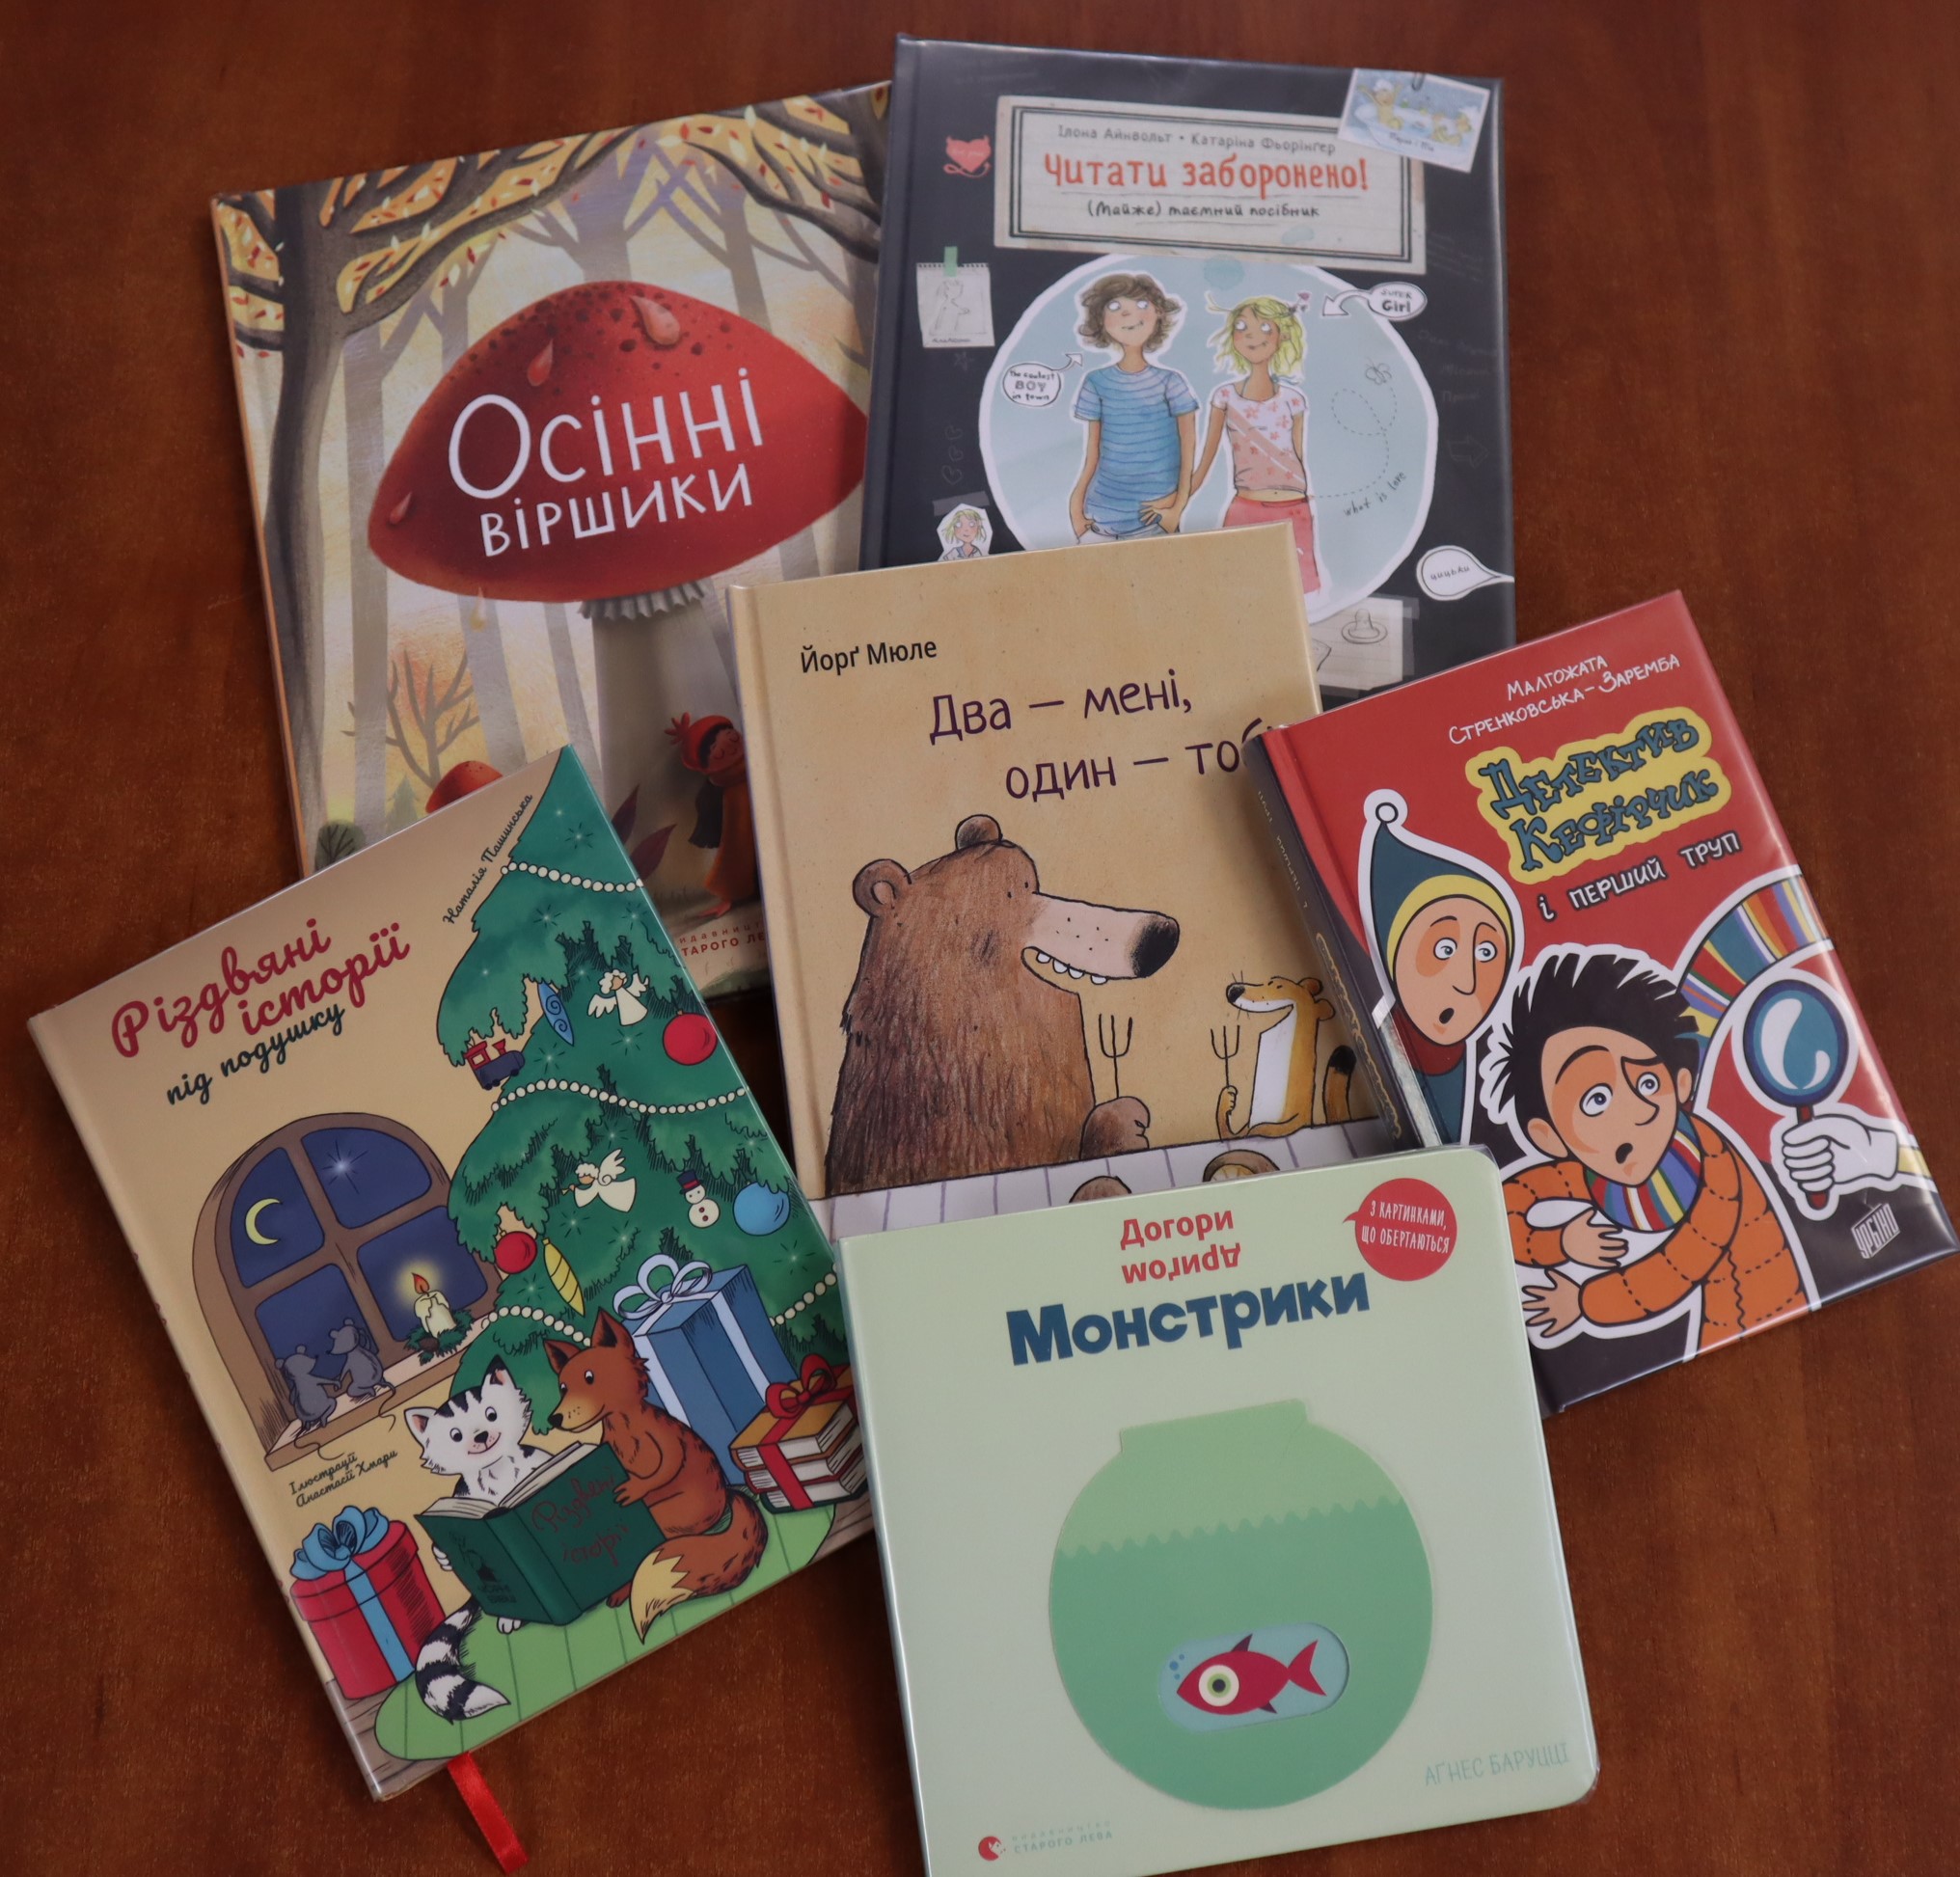   Książki w języku ukraińskim w zbiorach międzyzdrojskiej biblioteki!